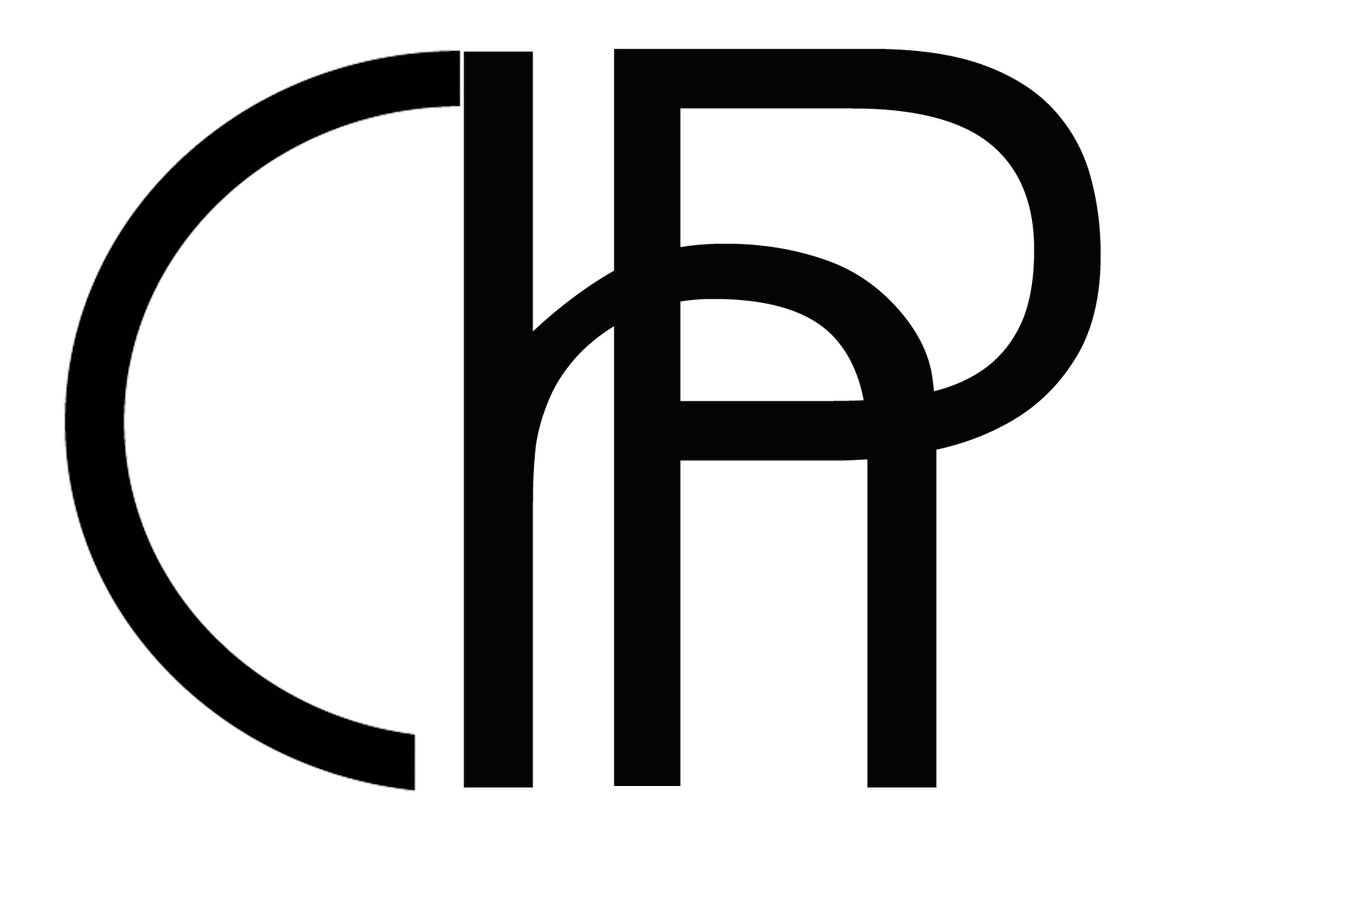 CHP